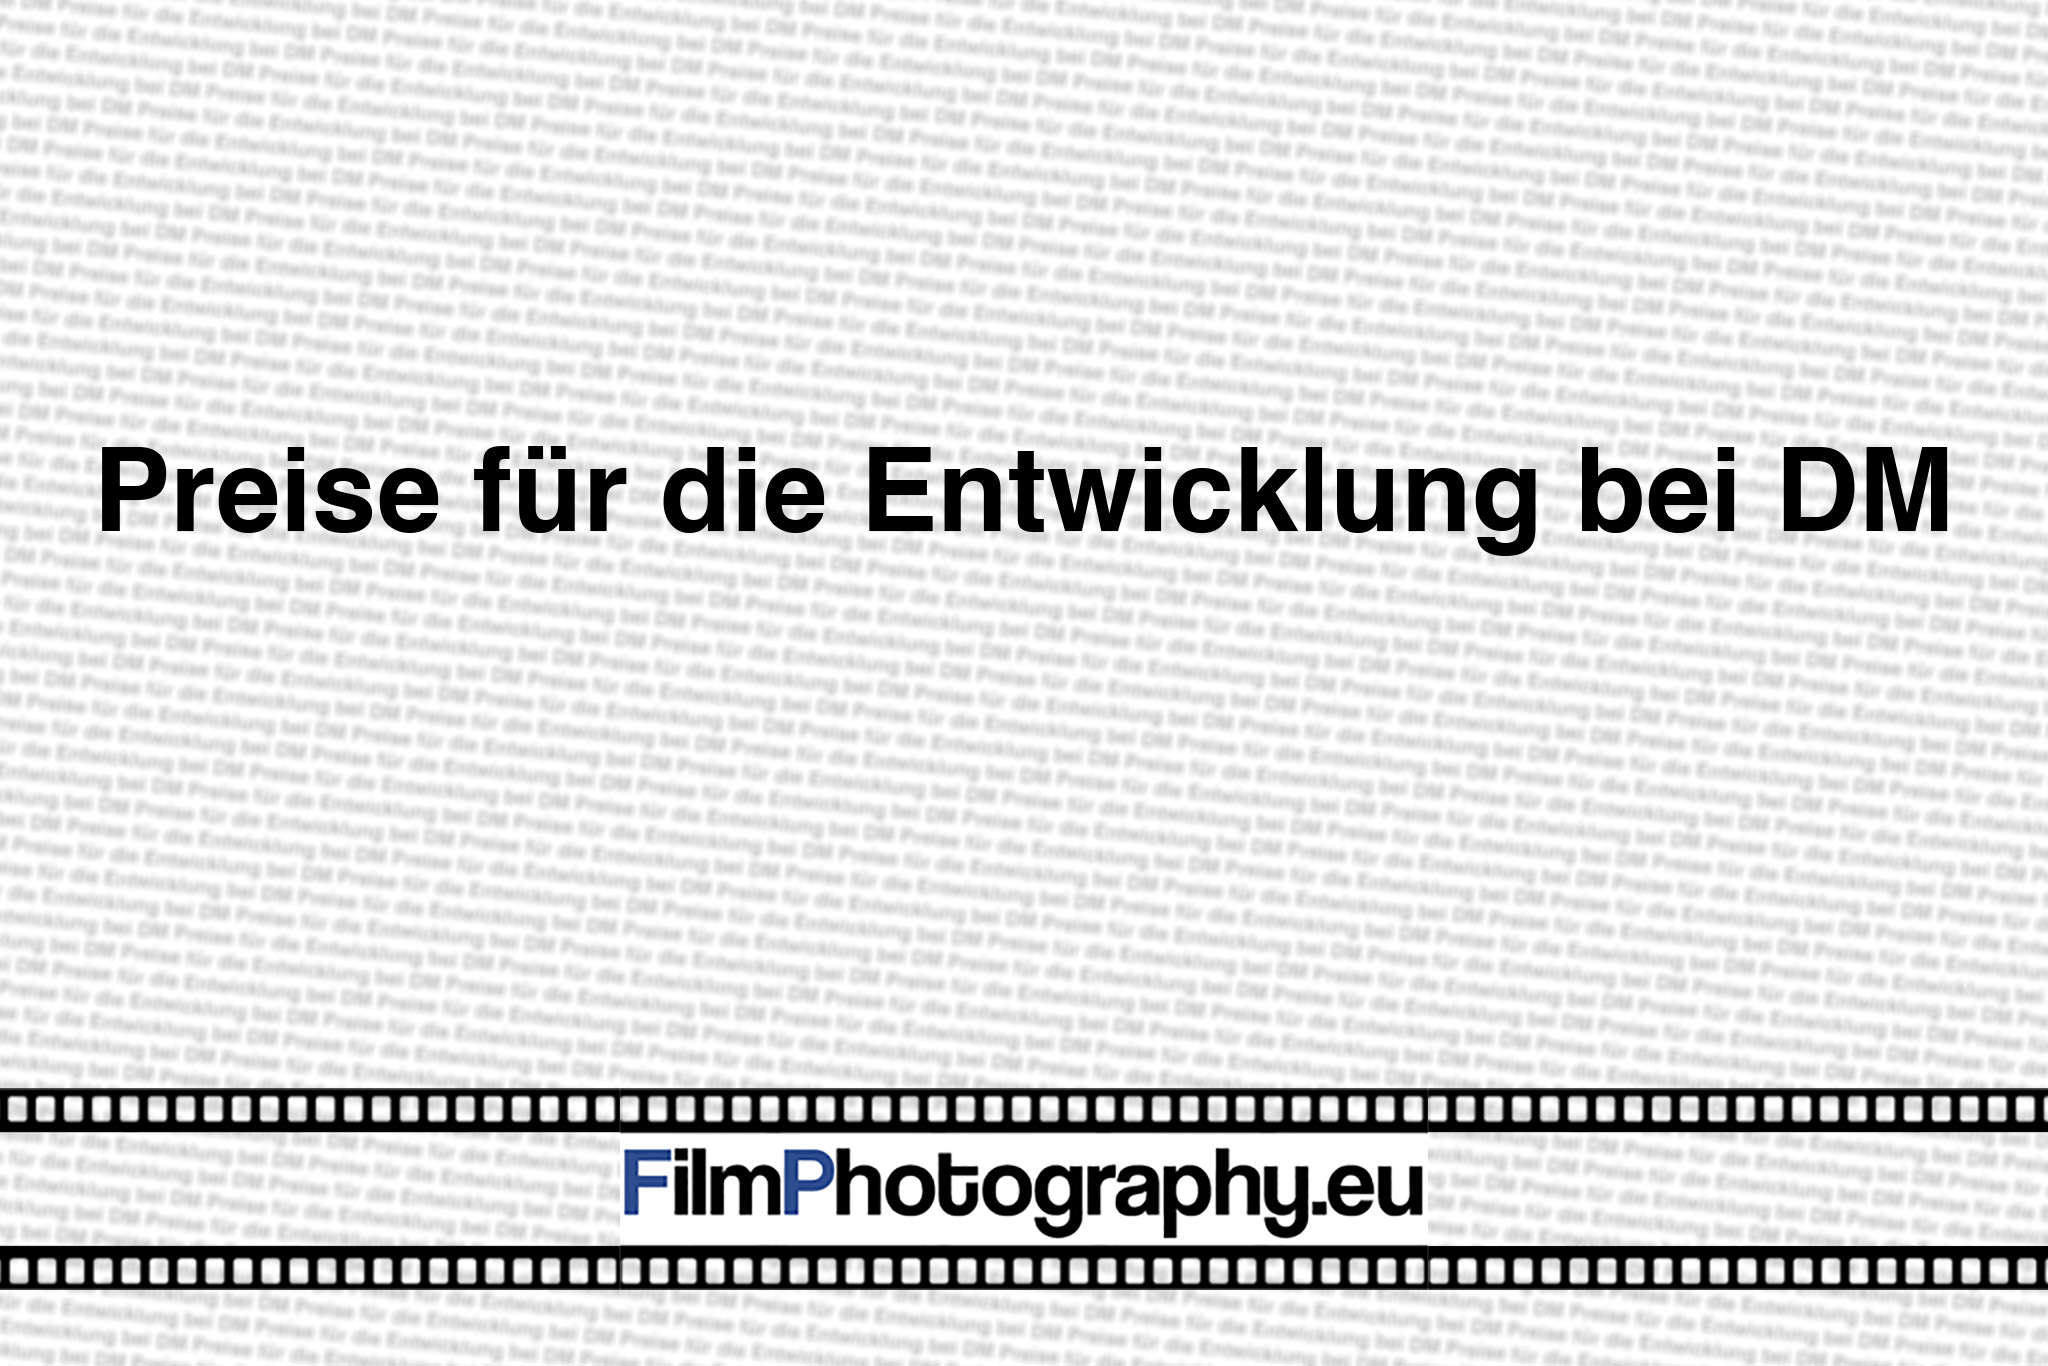 Preise für die Entwicklung bei DM - Filmphotography.eu